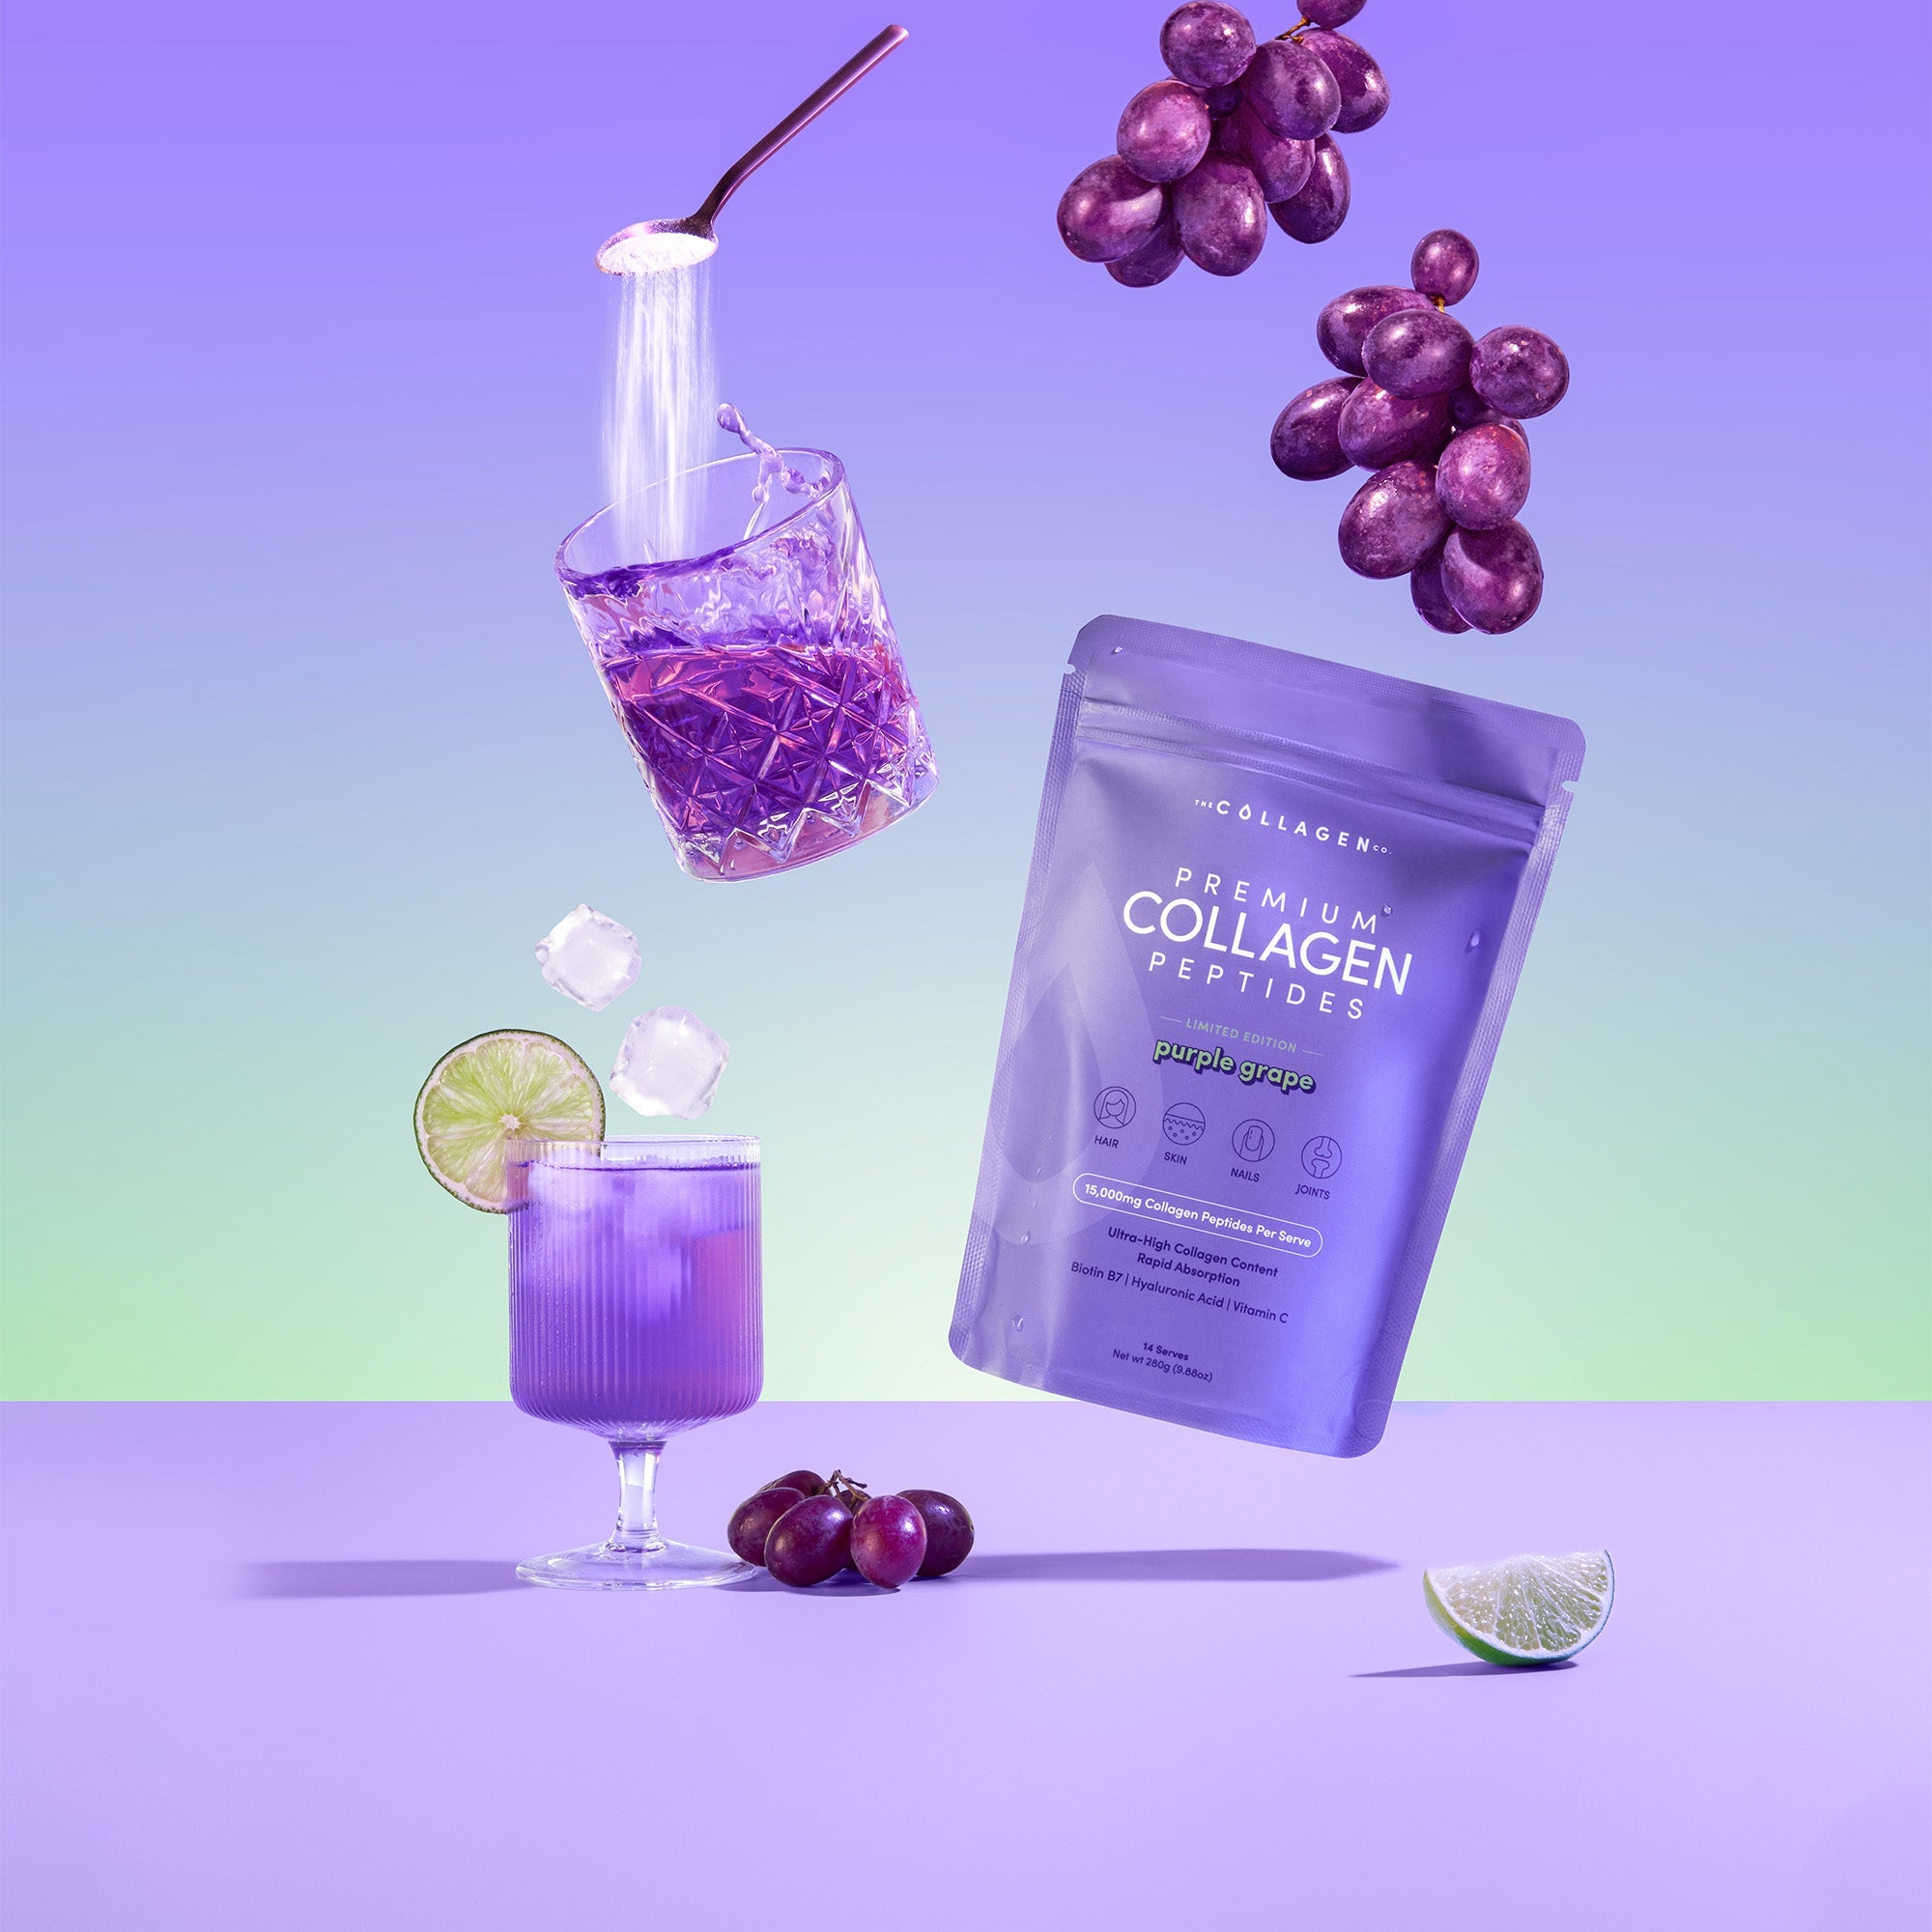 Purple Grape Collagen Powder - 280g - The Collagen Co.